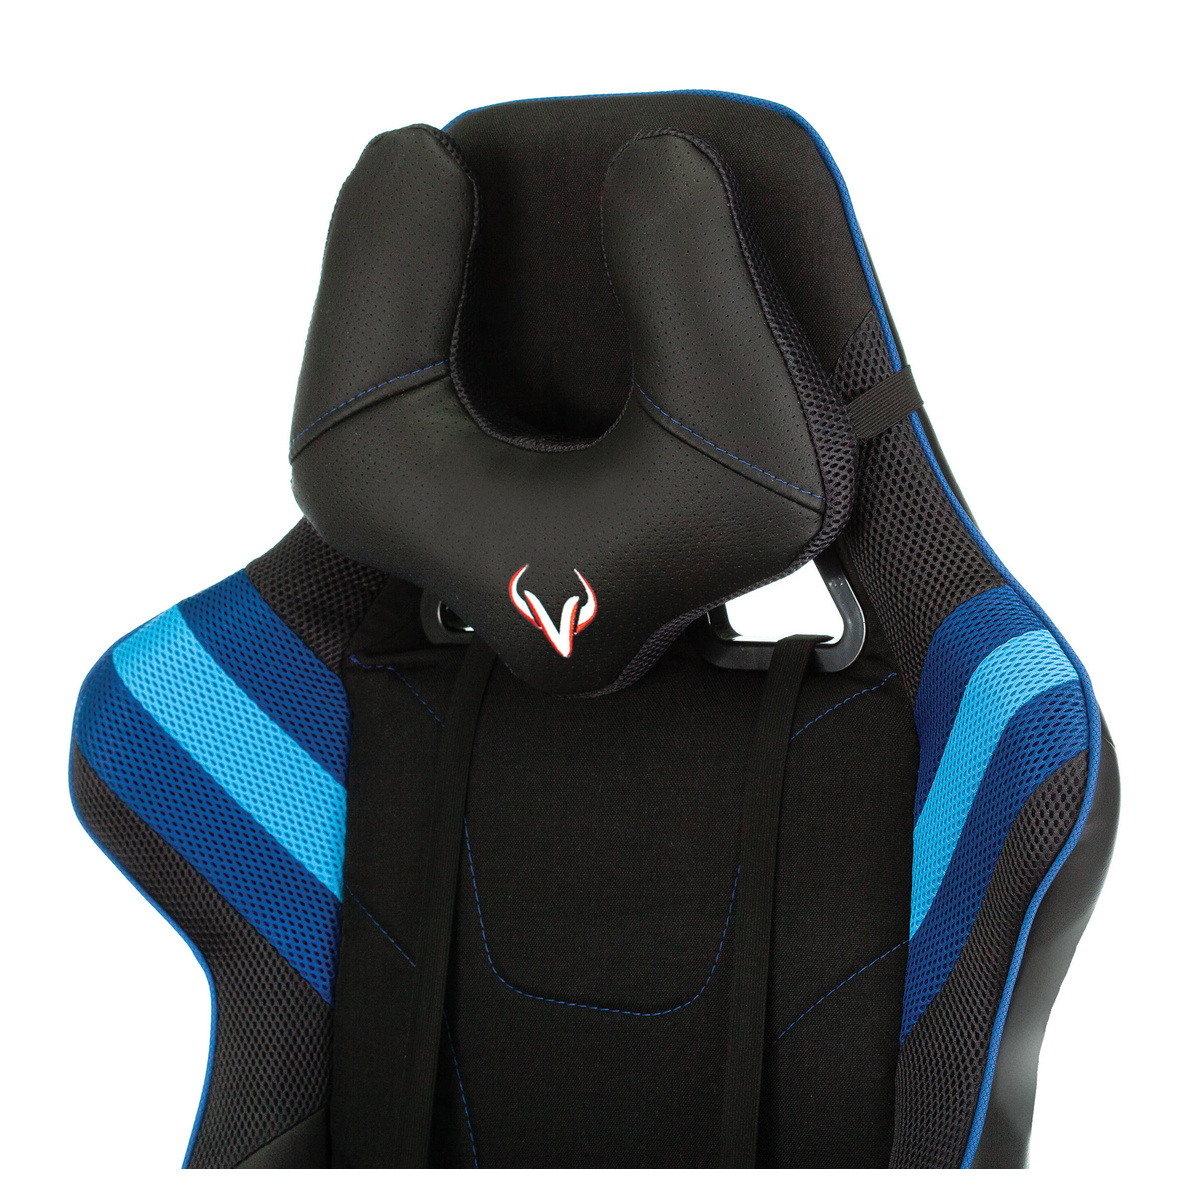 Кресло игровое Zombie VIKING 4 AERO (Цвет: Black/Blue)